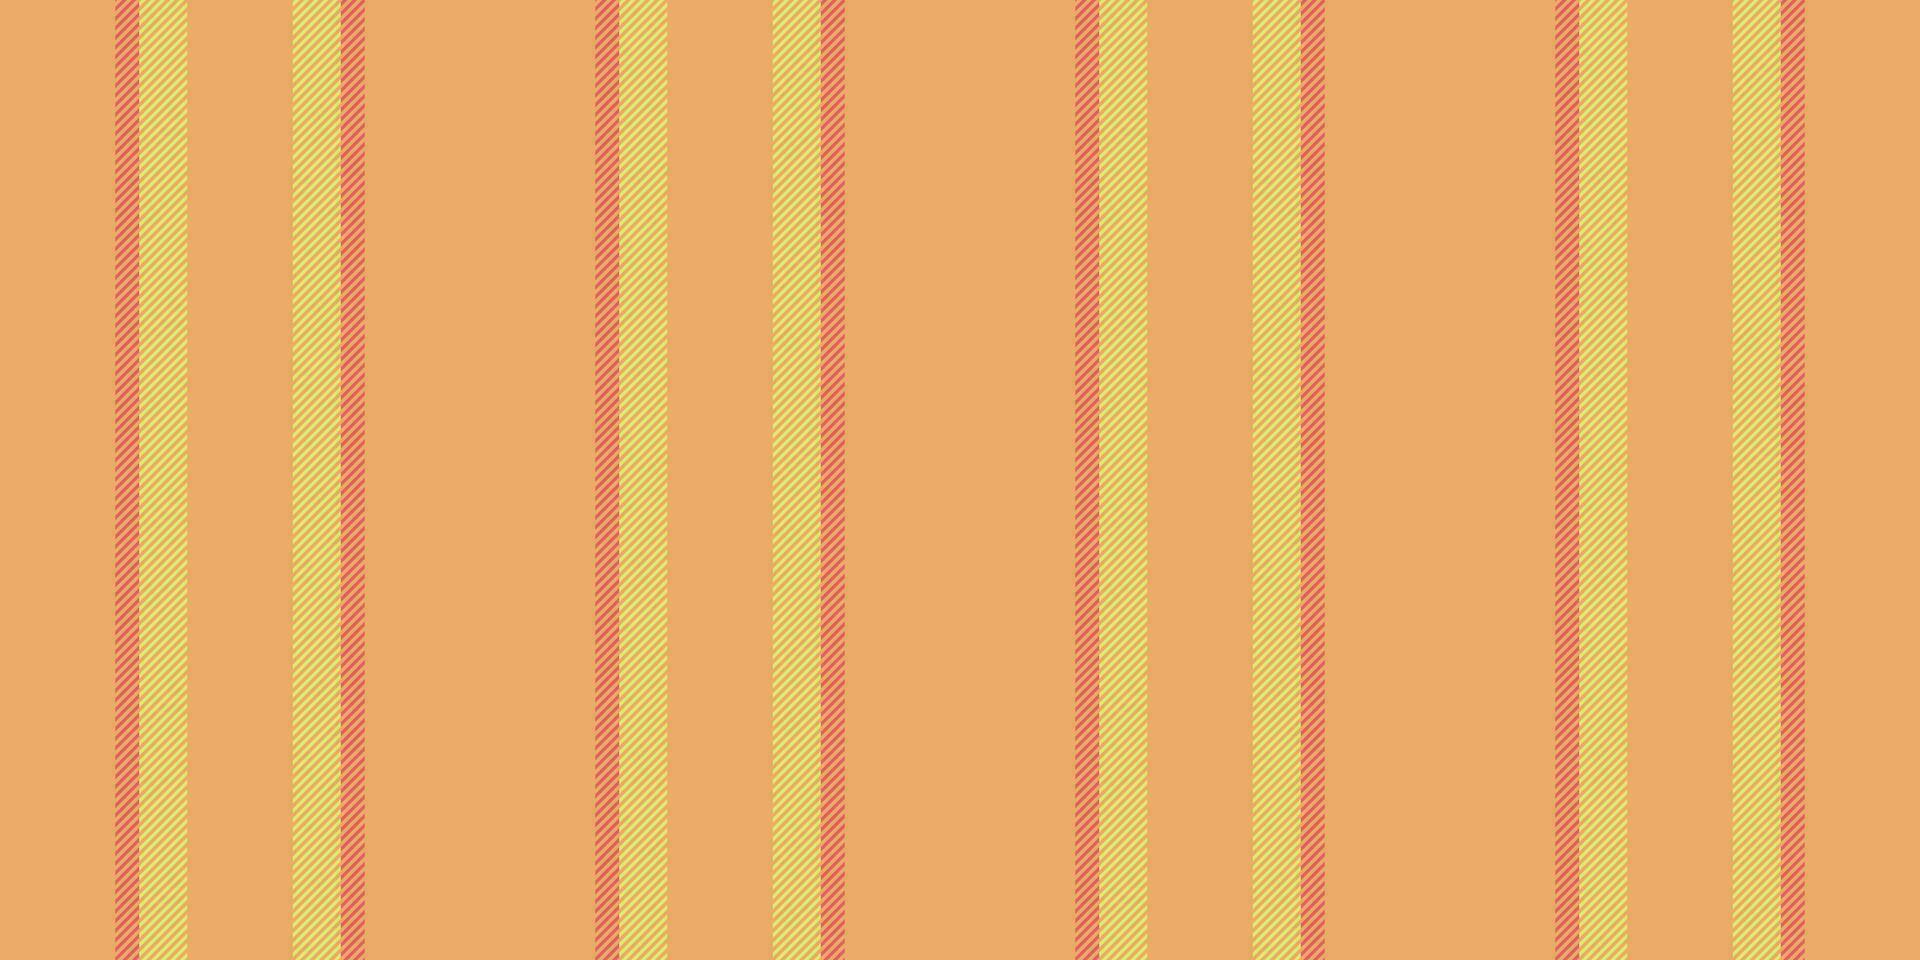 innehåll rader sömlös mönster, kläder vertikal bakgrund textur. öken- vektor tyg rand textil- i orange och kalk färger.